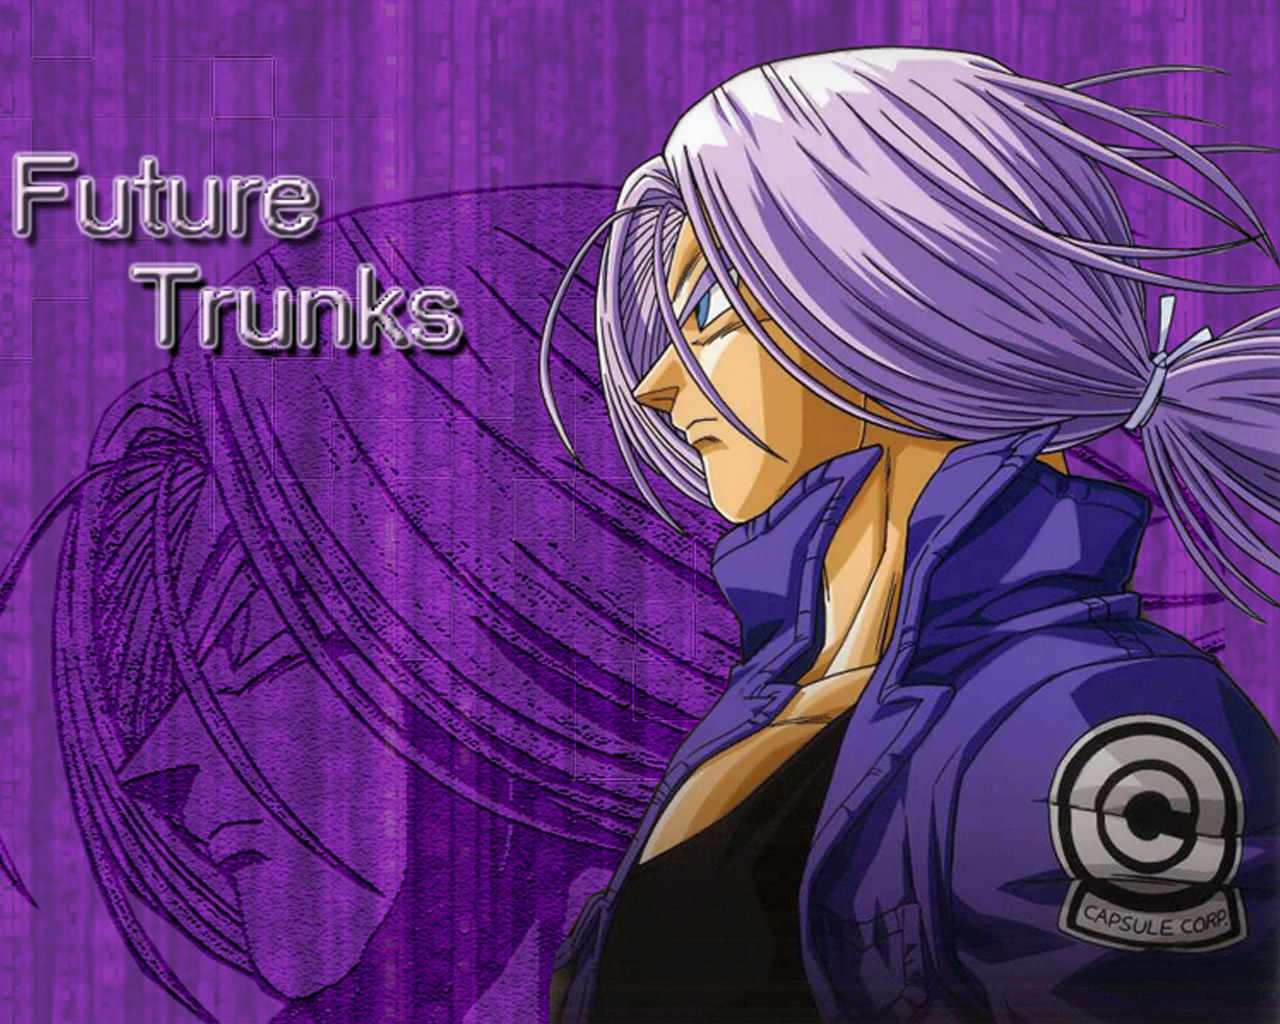 Mirai-trunks - Future Trunks - HD Wallpaper 